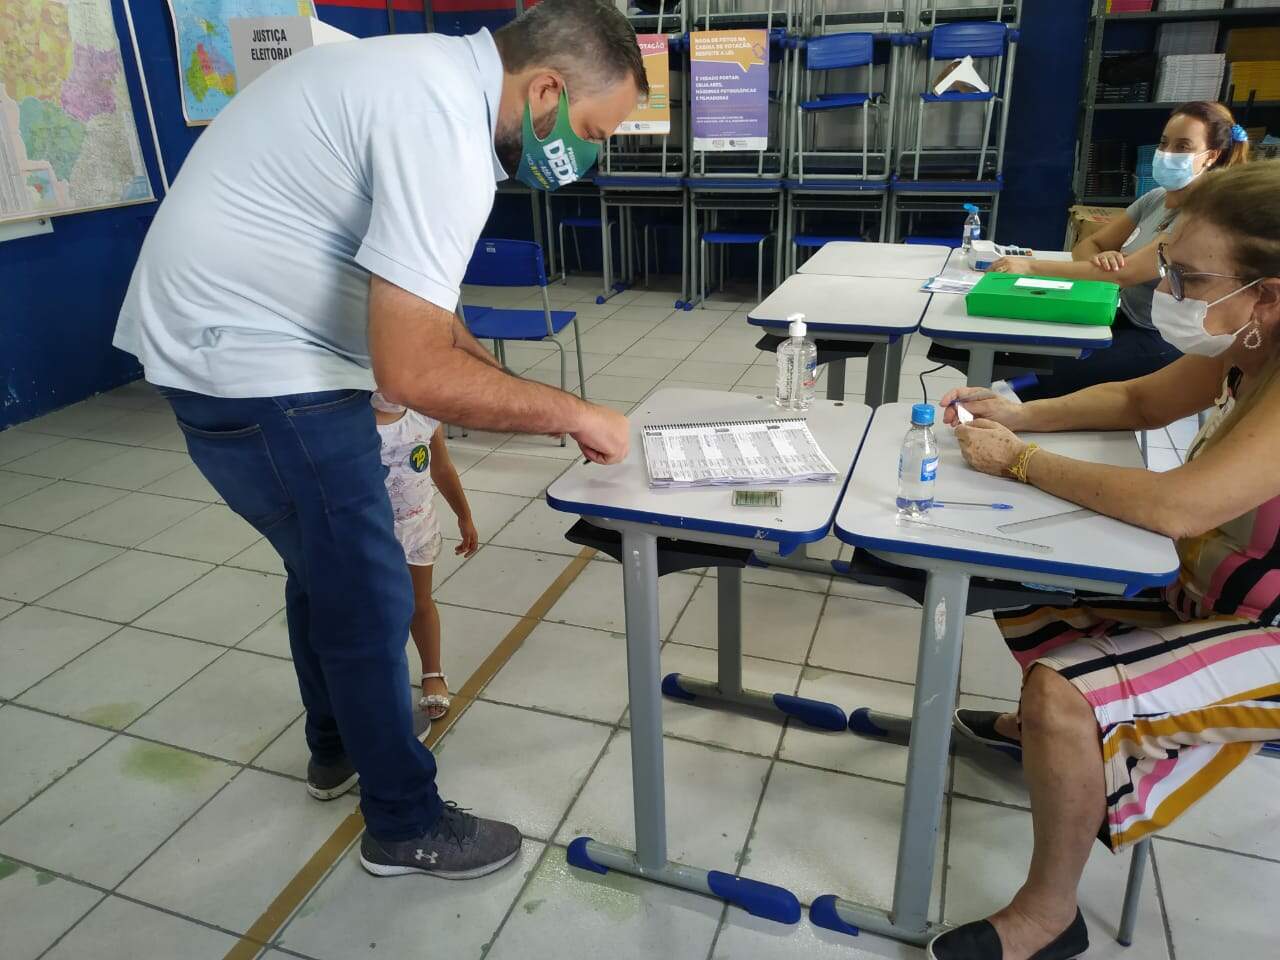 Candidato pelo DEM, Dedé do Adélia votou às 14h20, em escola no Centro